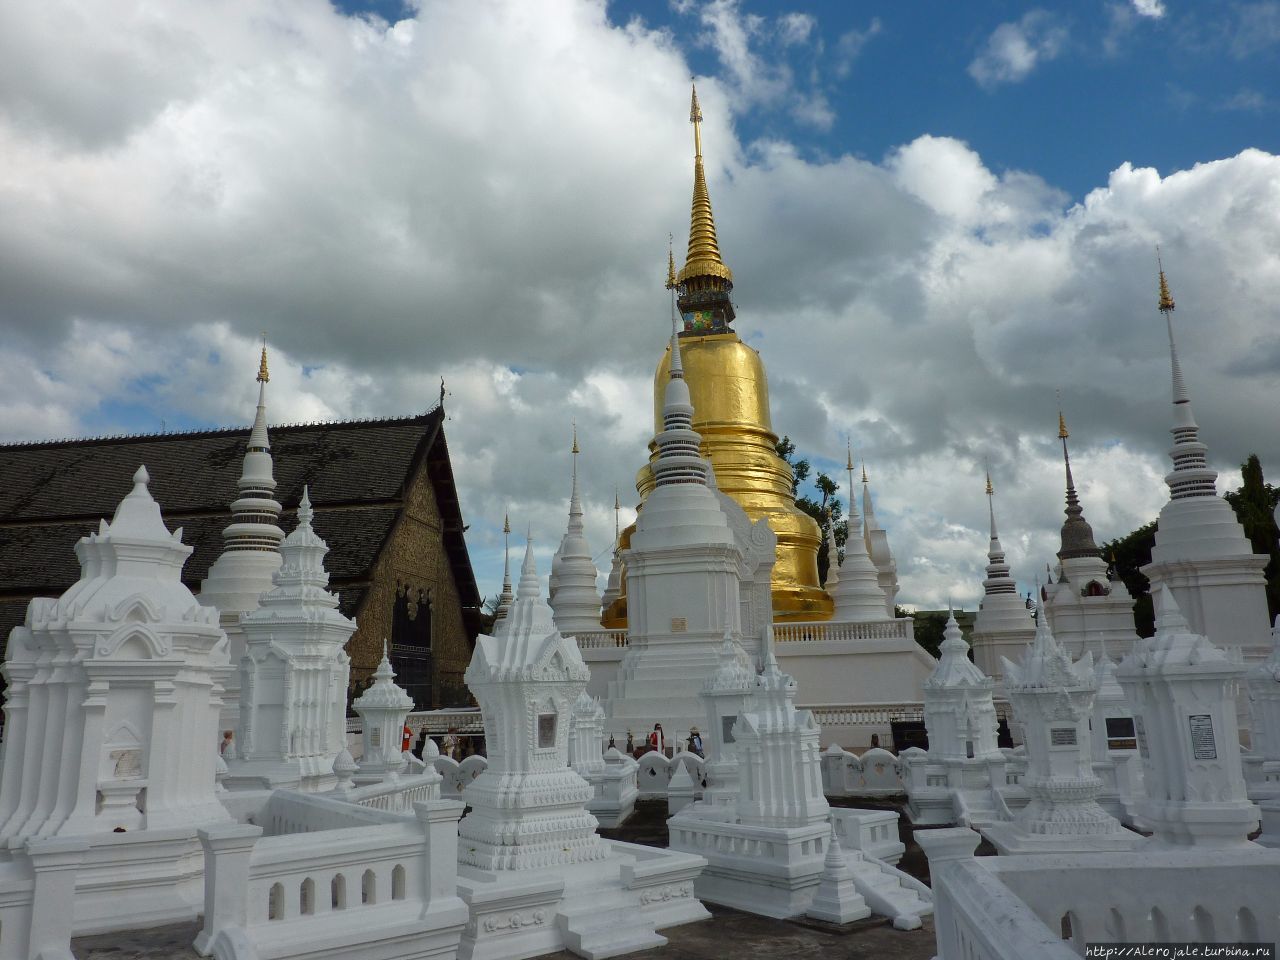 Аэропорт в тайском Чиангмае и сразу к рыжим монахам Чиангмай, Таиланд